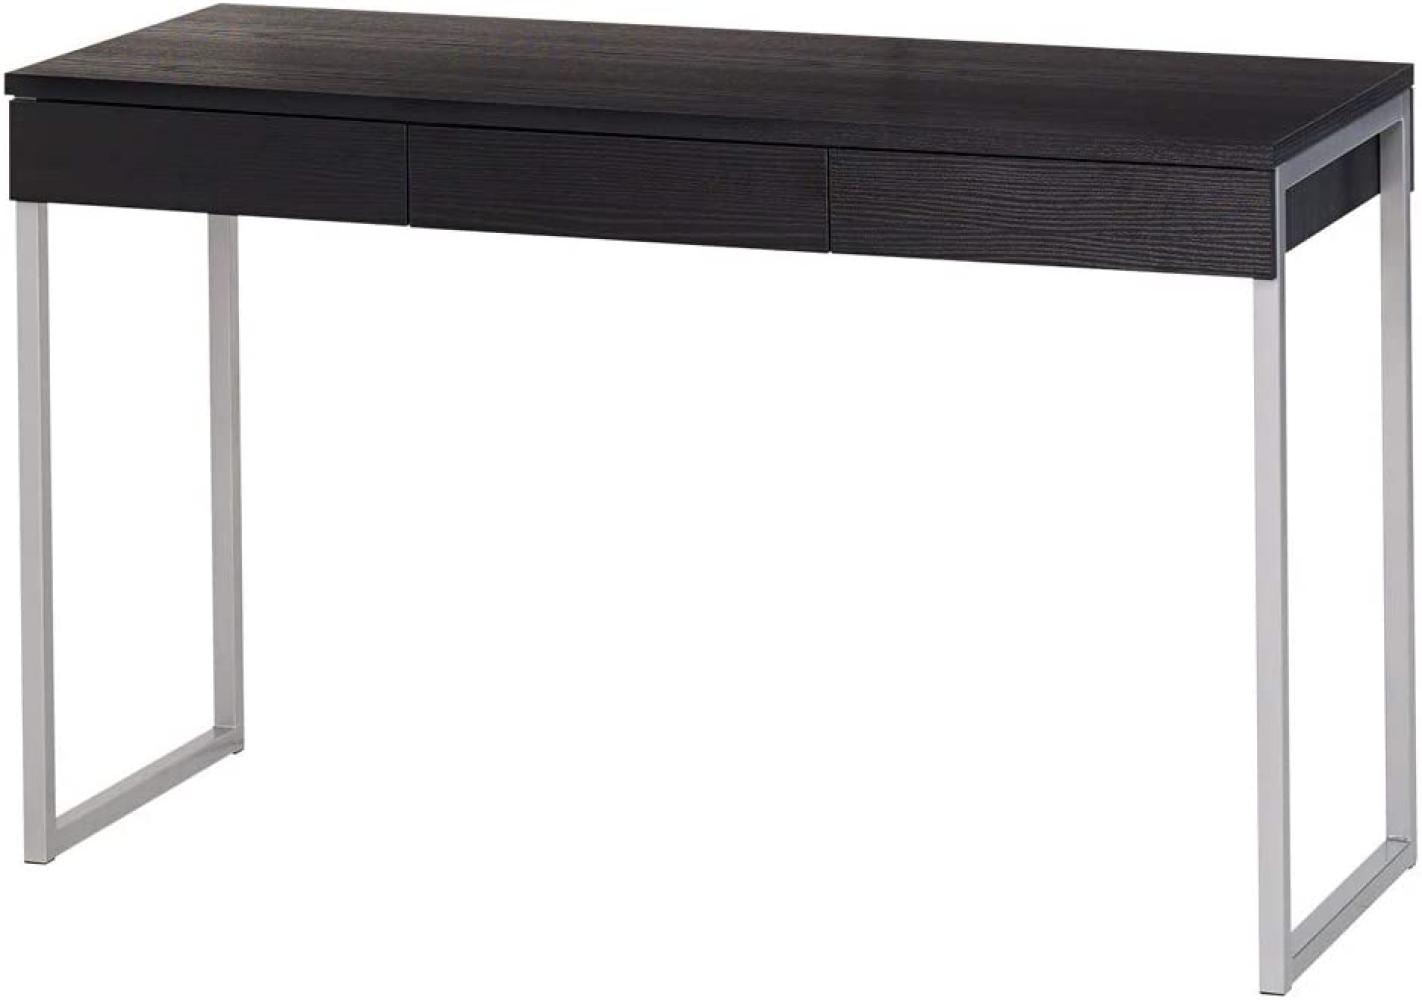 Linearer Schreibtisch mit drei Schubladen, Holzoptik schwarz, 125 x 76 x 51 cm Bild 1